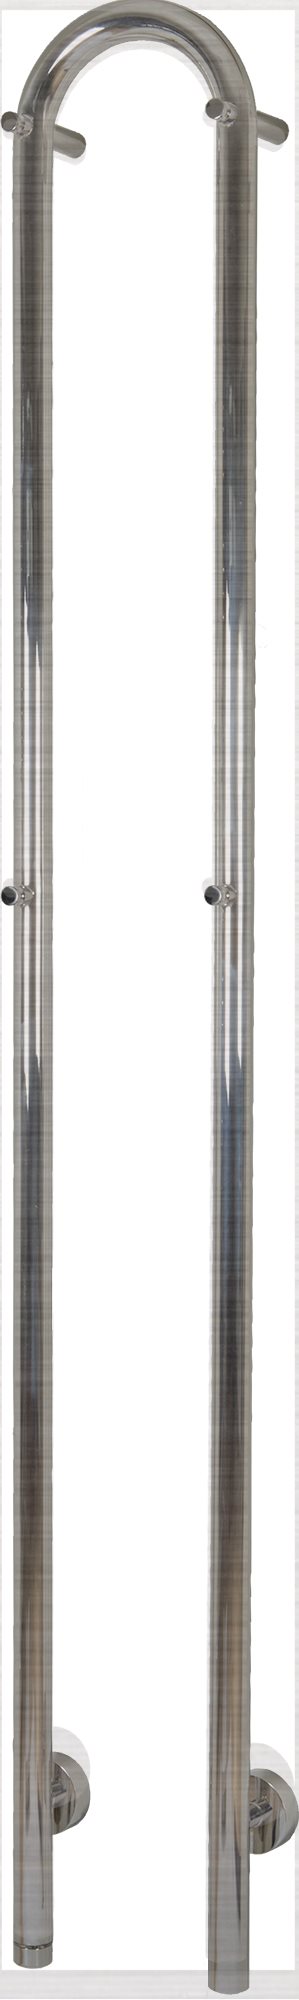 Kriss Duo El-håndklædevarmer 1480x190 mm børstet rustfrit stål 